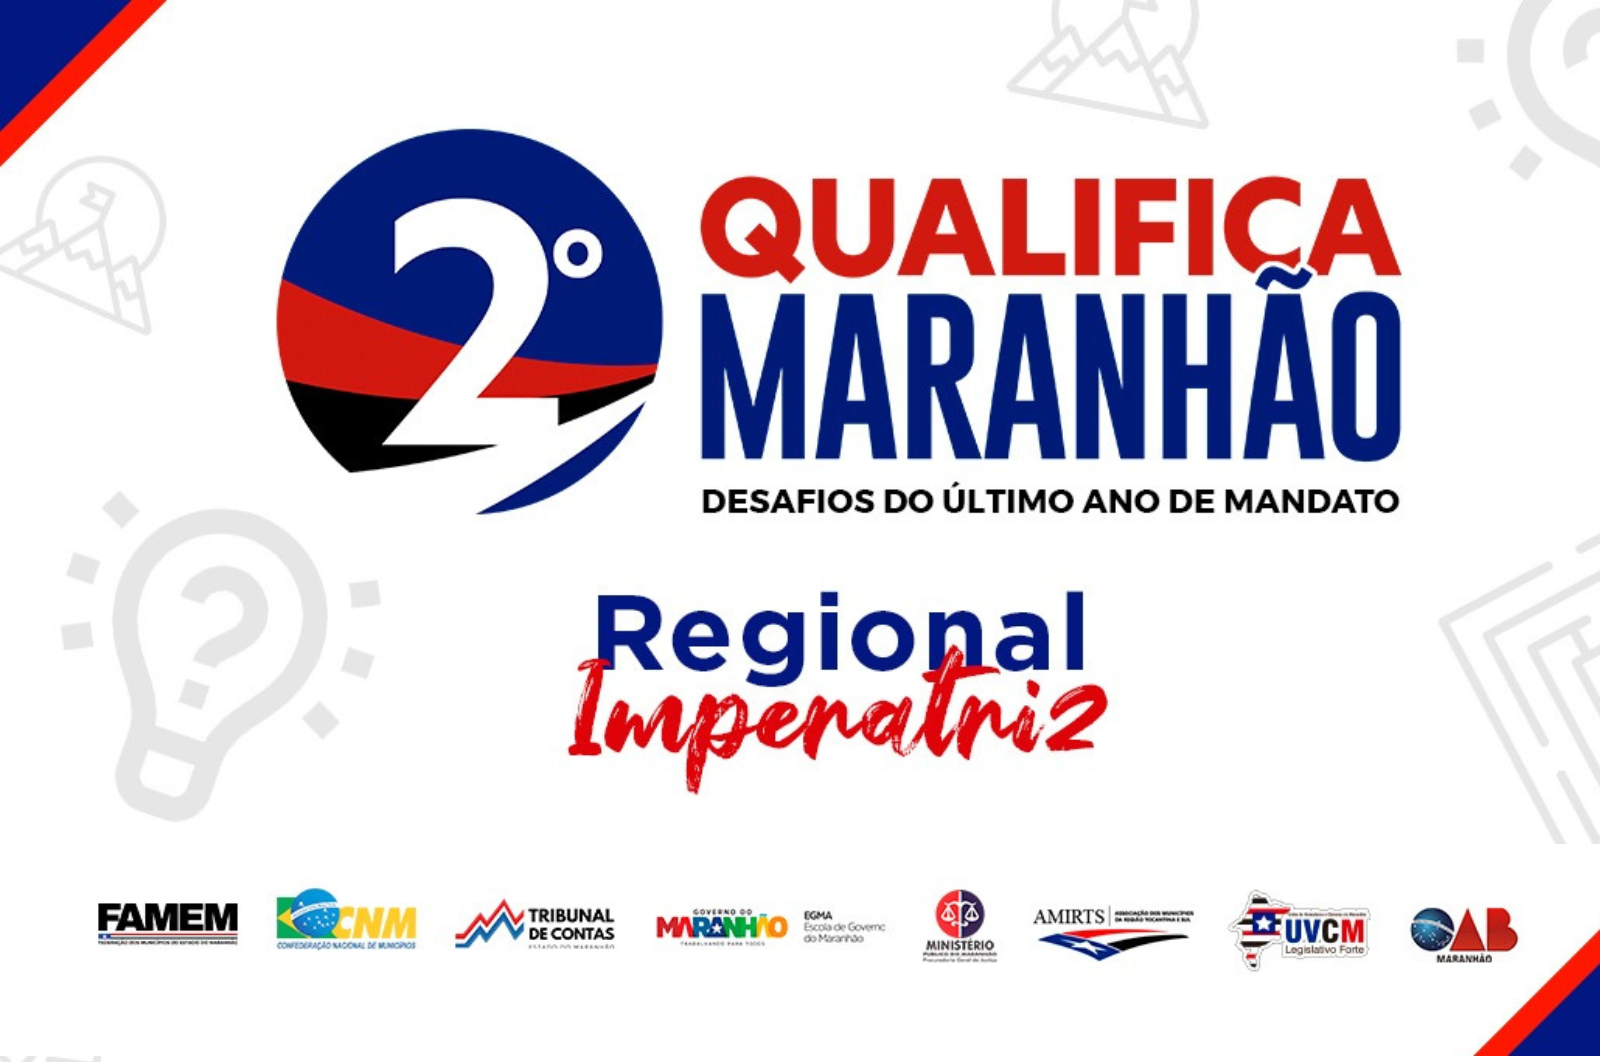 2º Qualifica Maranhão: Desafios do último ano de mandato (Regional Imperatriz)